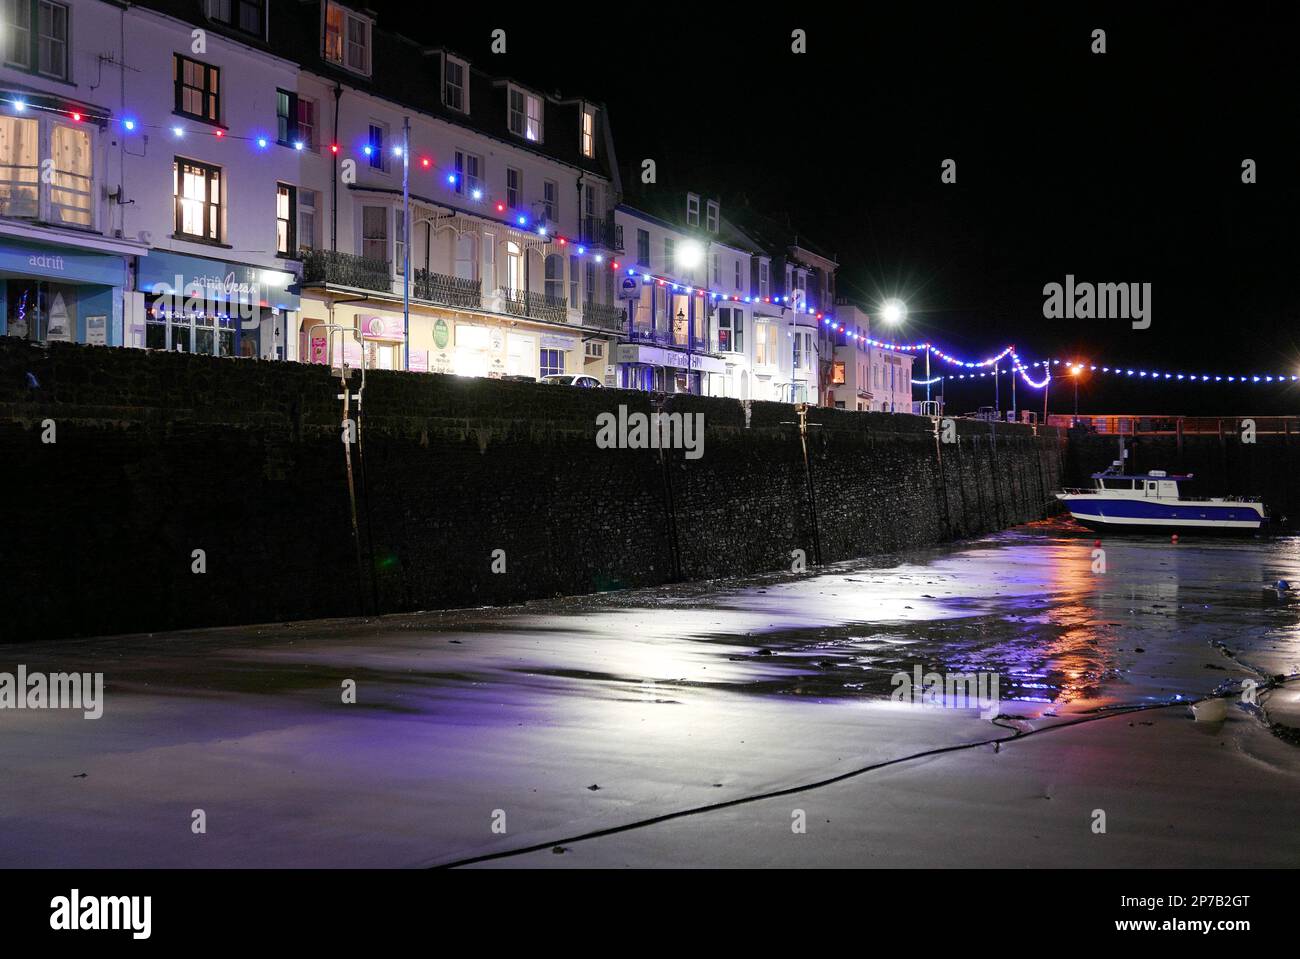 Le port et les maisons sont illuminés par les lumières de la rue la nuit. Devon. Angleterre. ROYAUME-UNI Banque D'Images